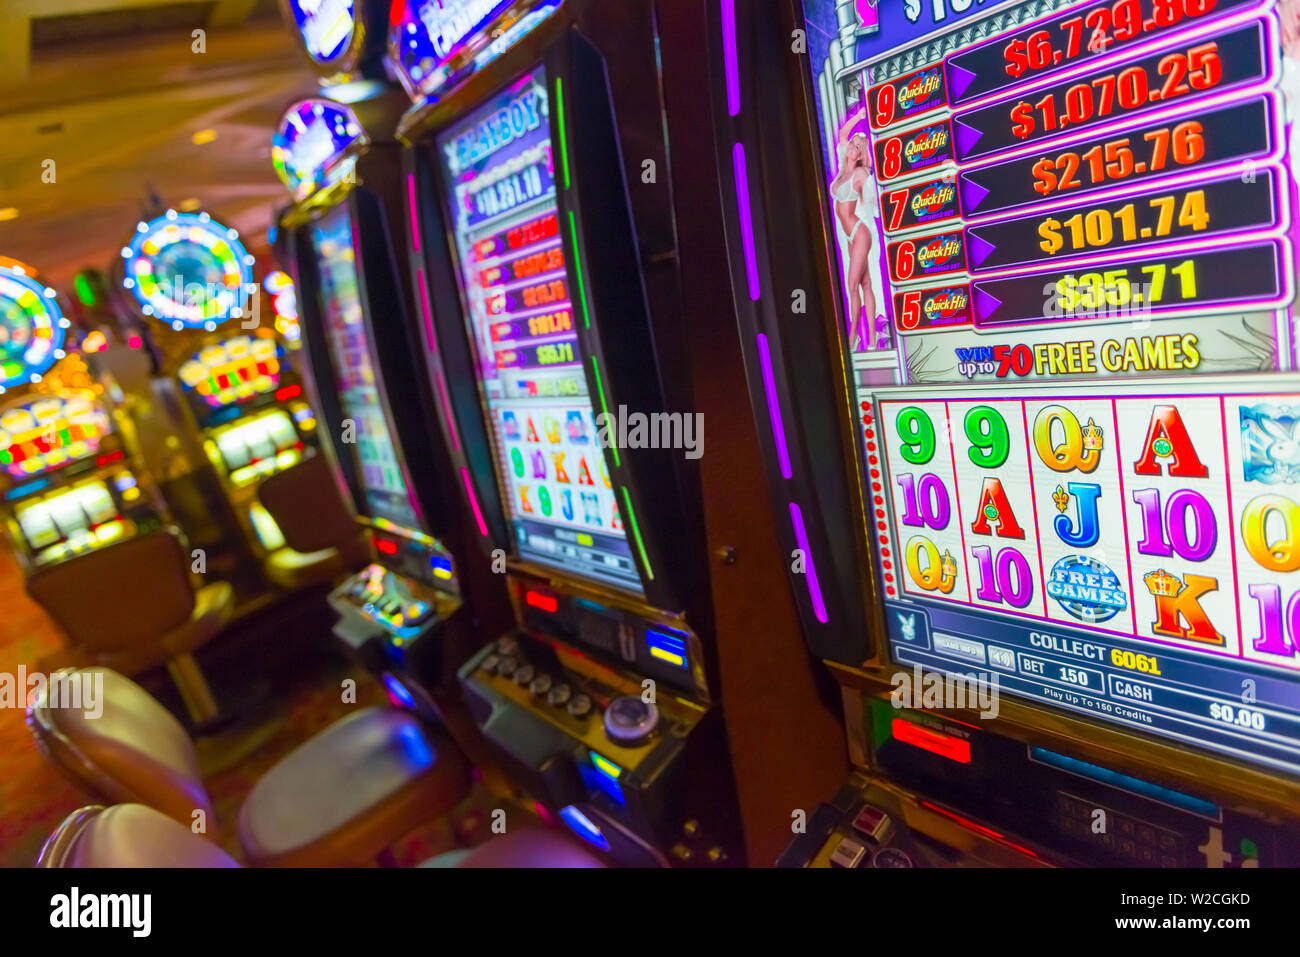 USA, Nevada, Las Vegas, Treasure Island Casino and Resort, Gaming Machine Stock Photo